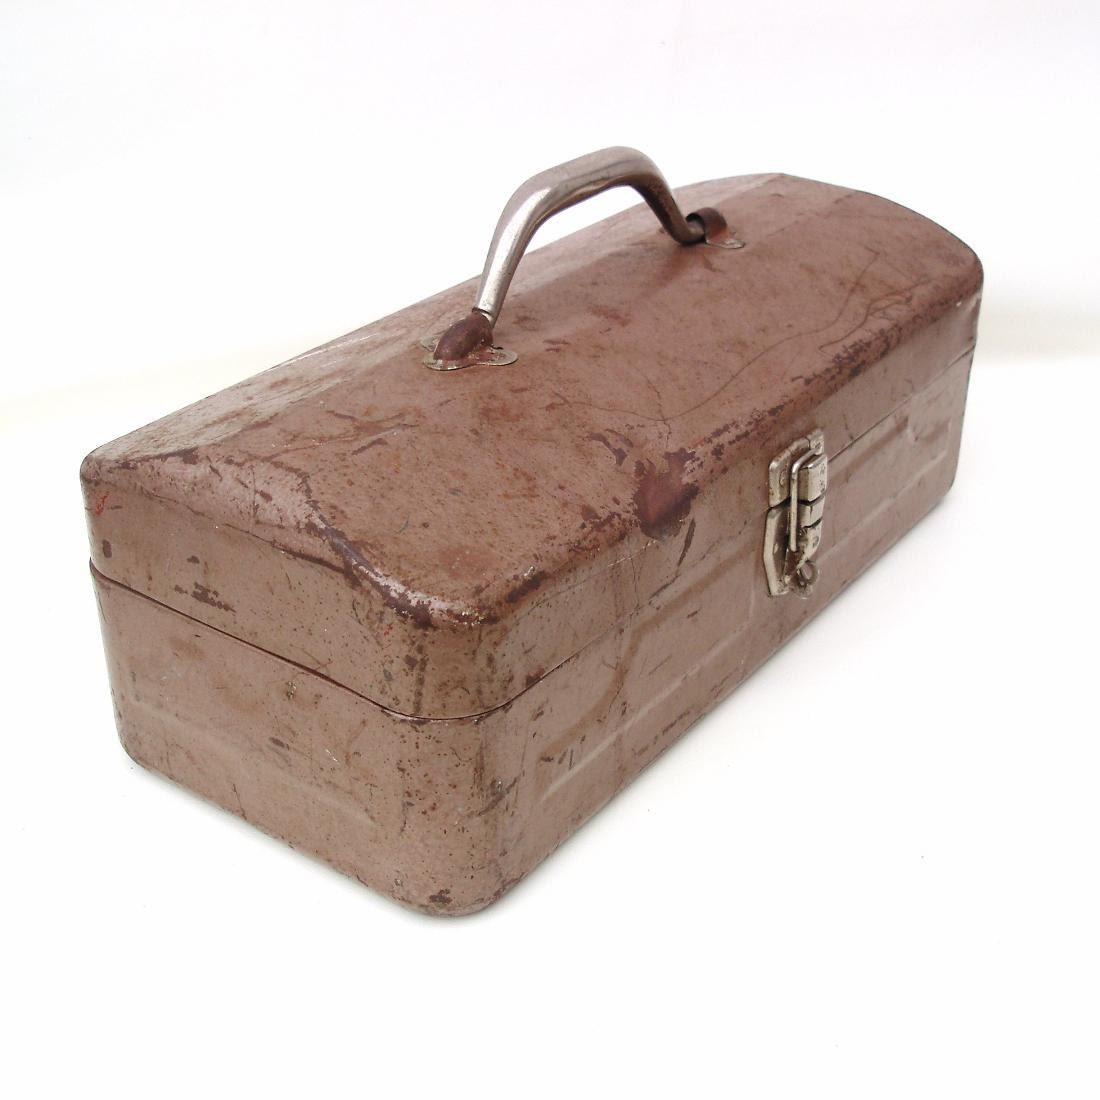 Vintage Tool Box Industrial Metal Storage Rustic Tackle